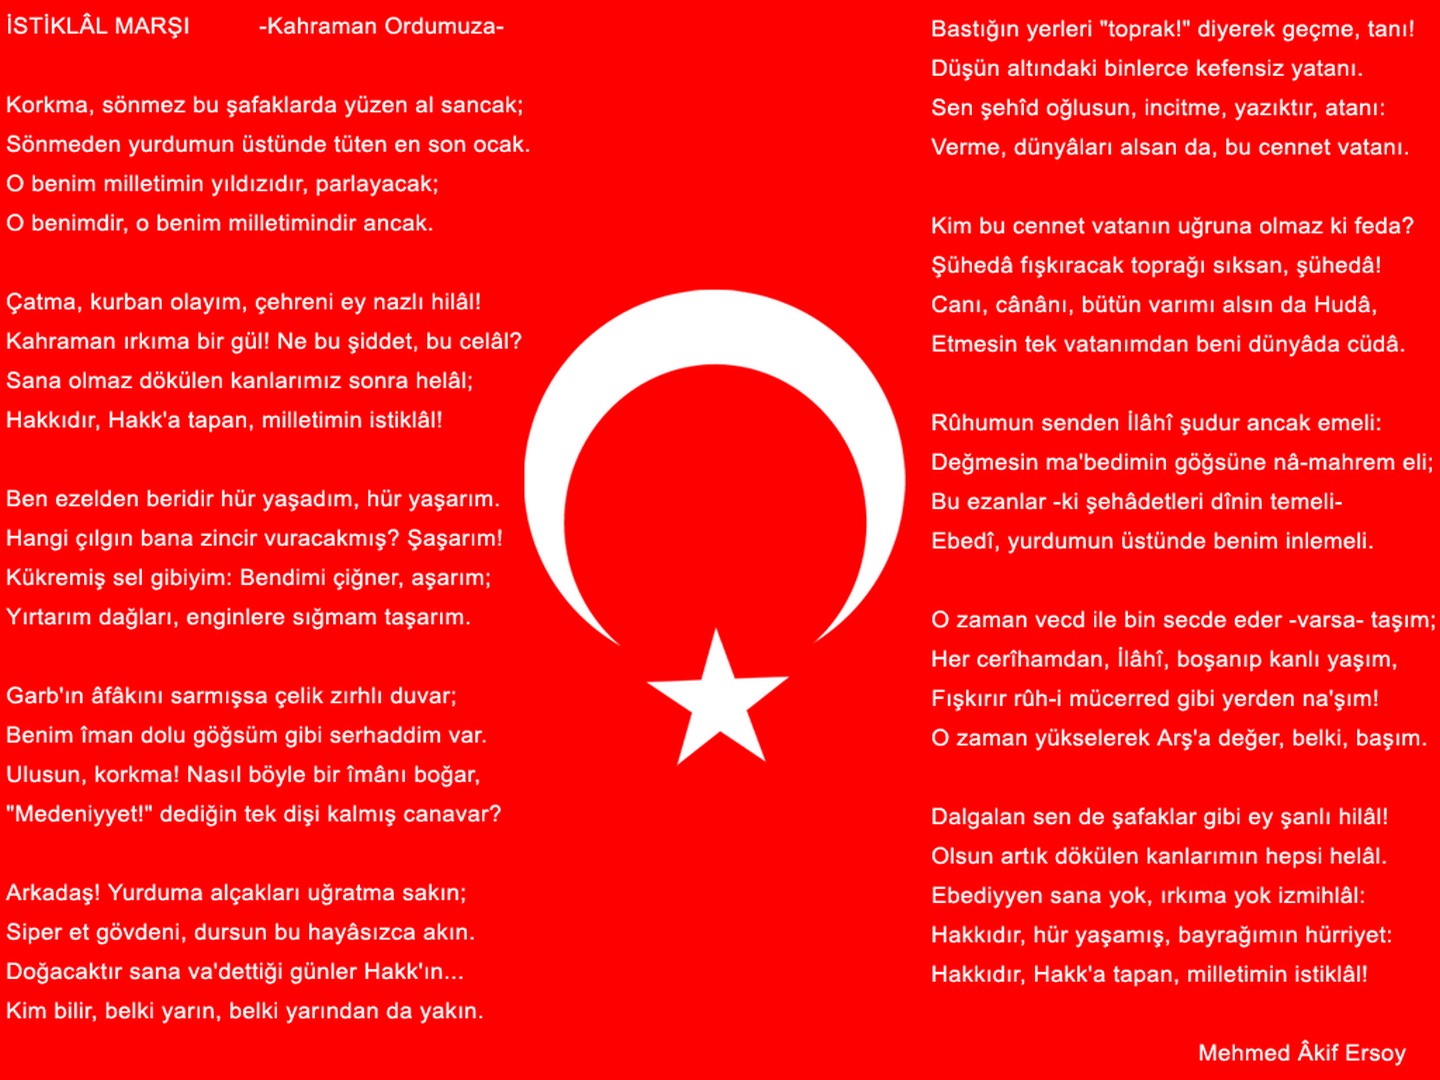 turk bayraklari indir 18